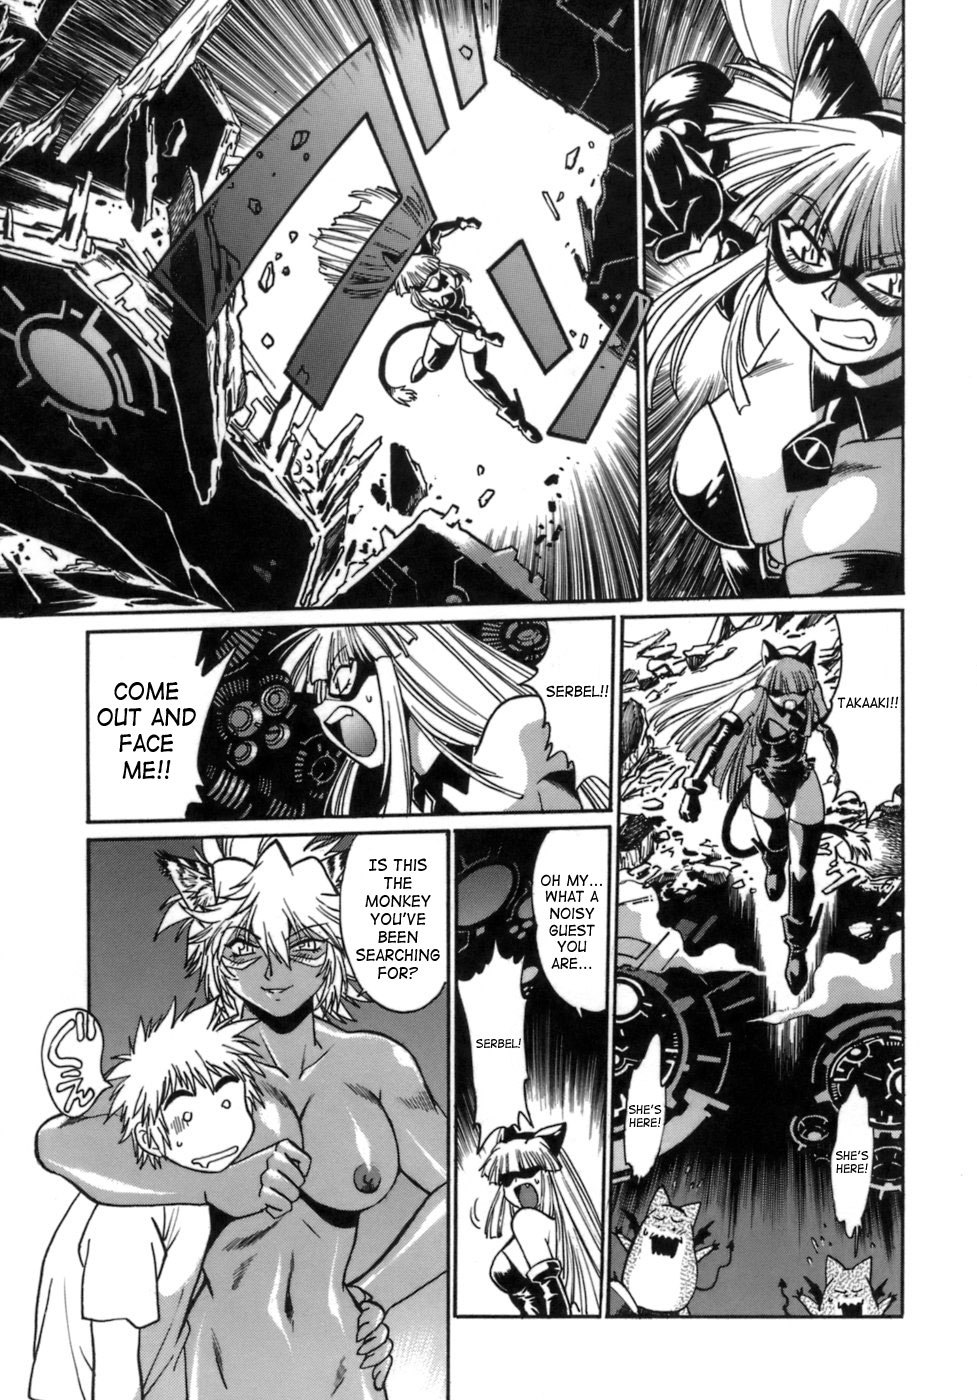 Tail Chaser Vol.1 152 hentai manga